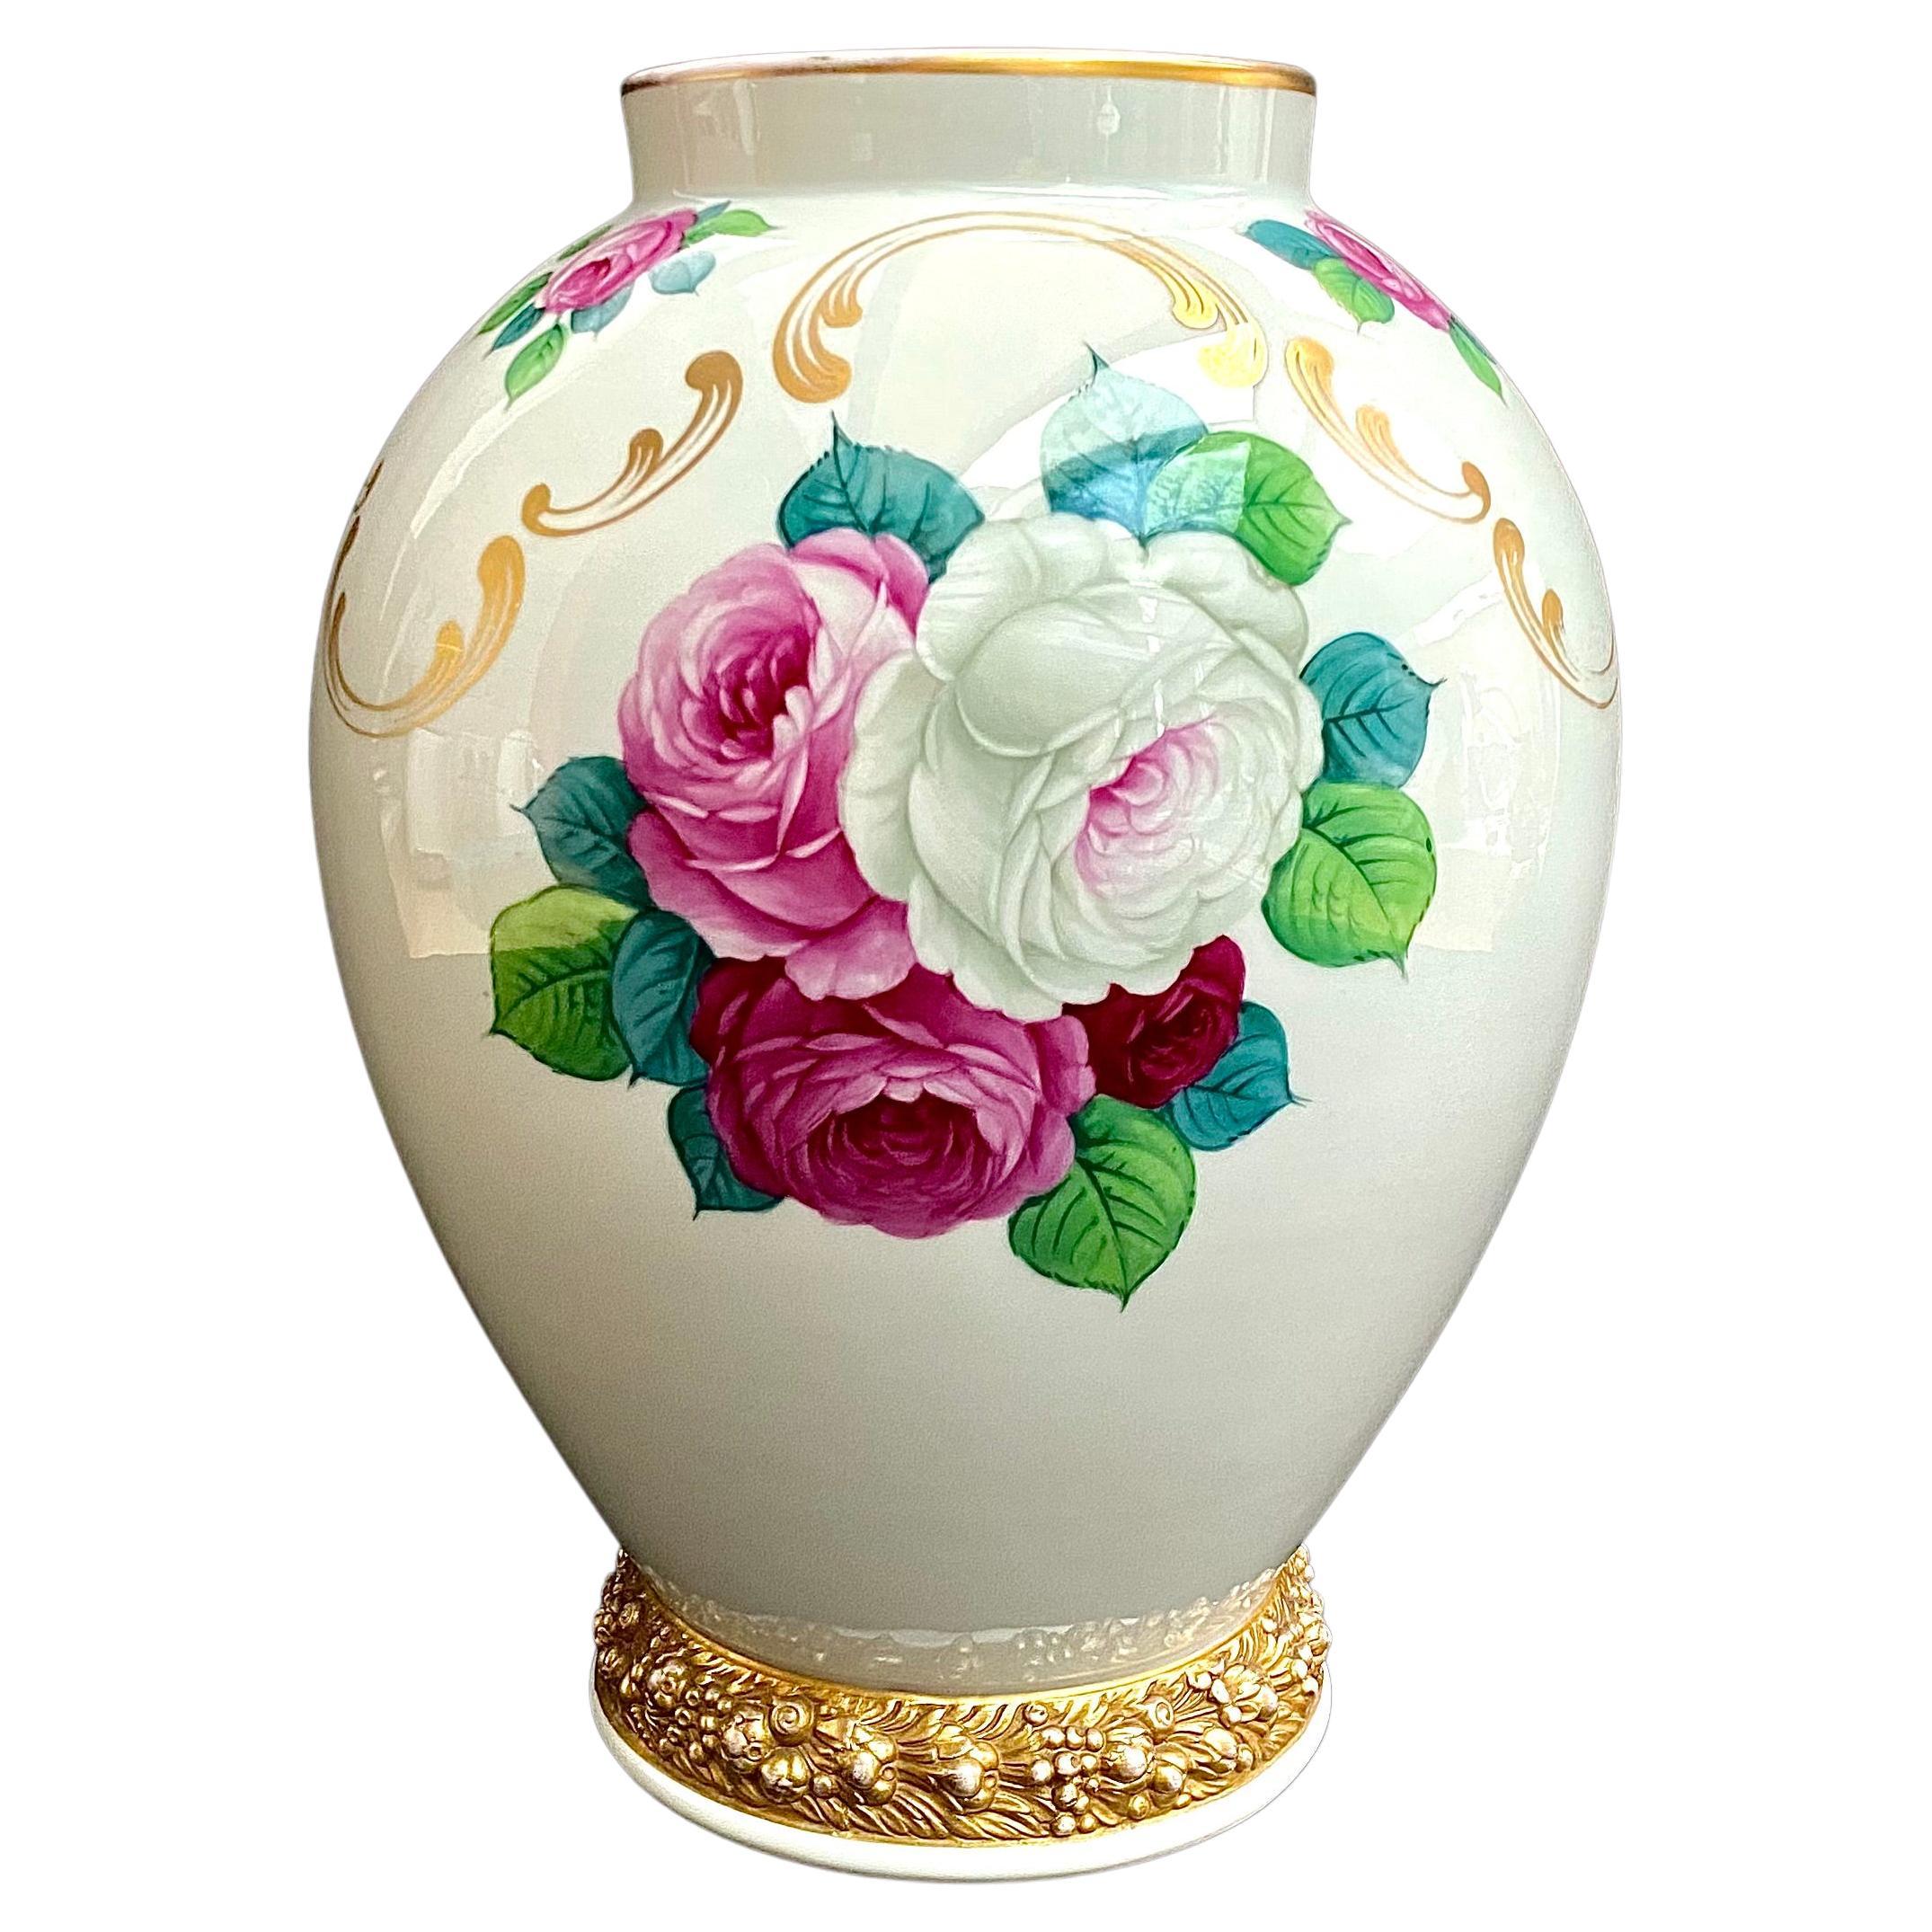 Ancien vase Rosenthal Art Nouveau Roses Jardinière signé Vase floral des années 1920